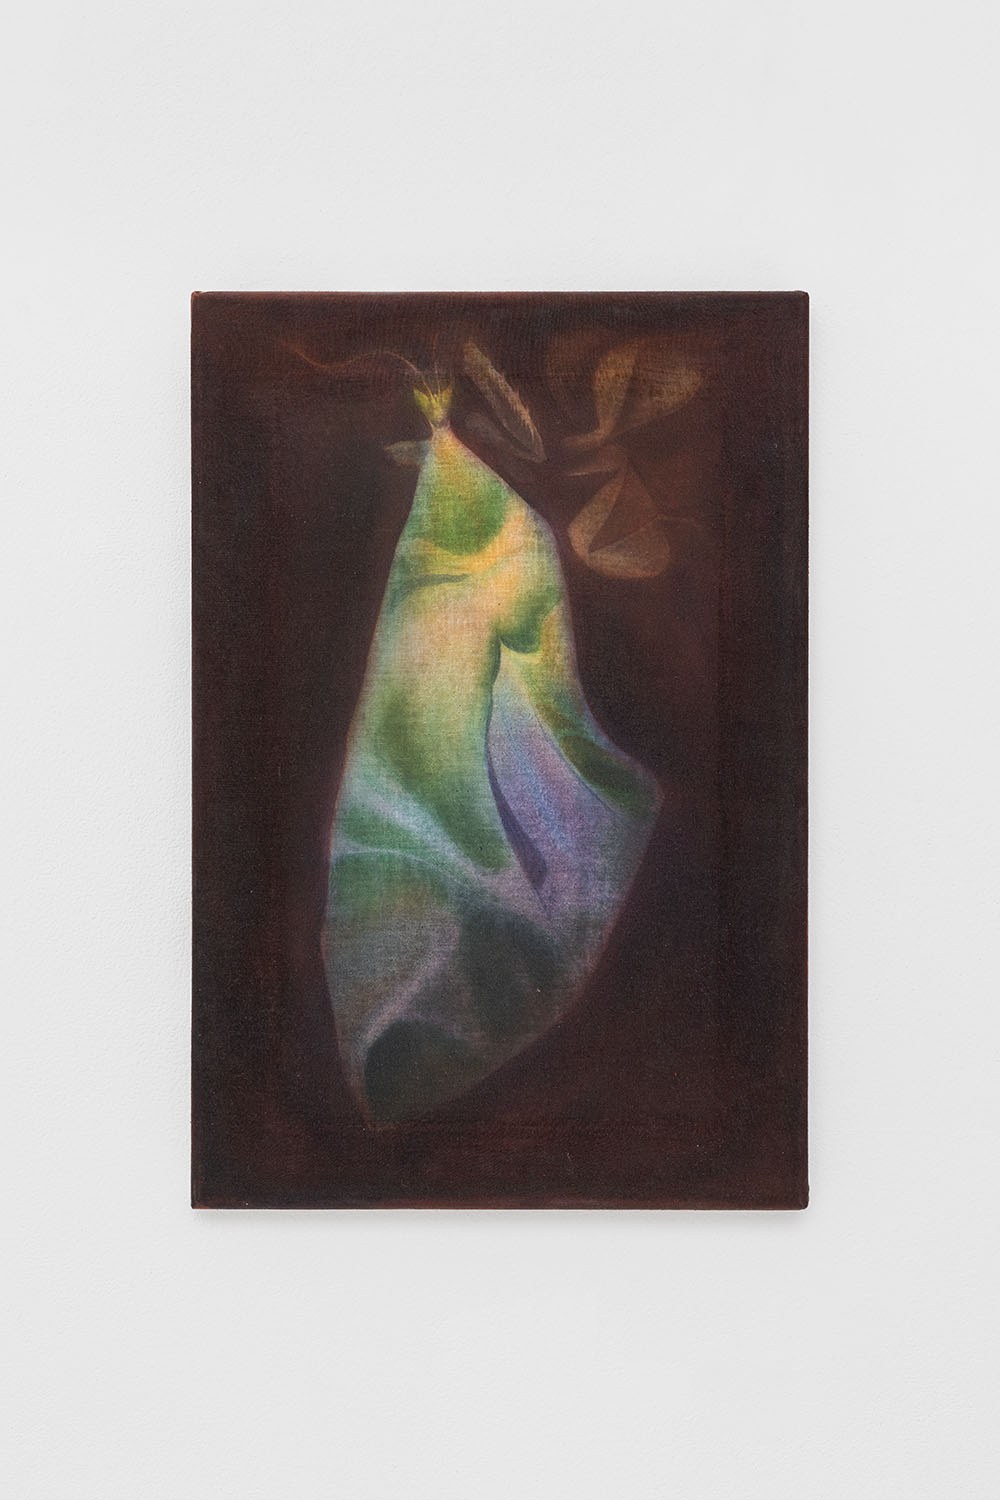 Le repas (Sphinx du laurier rose), 2022 acrylic and gouache on cotton,45 x 30 cm